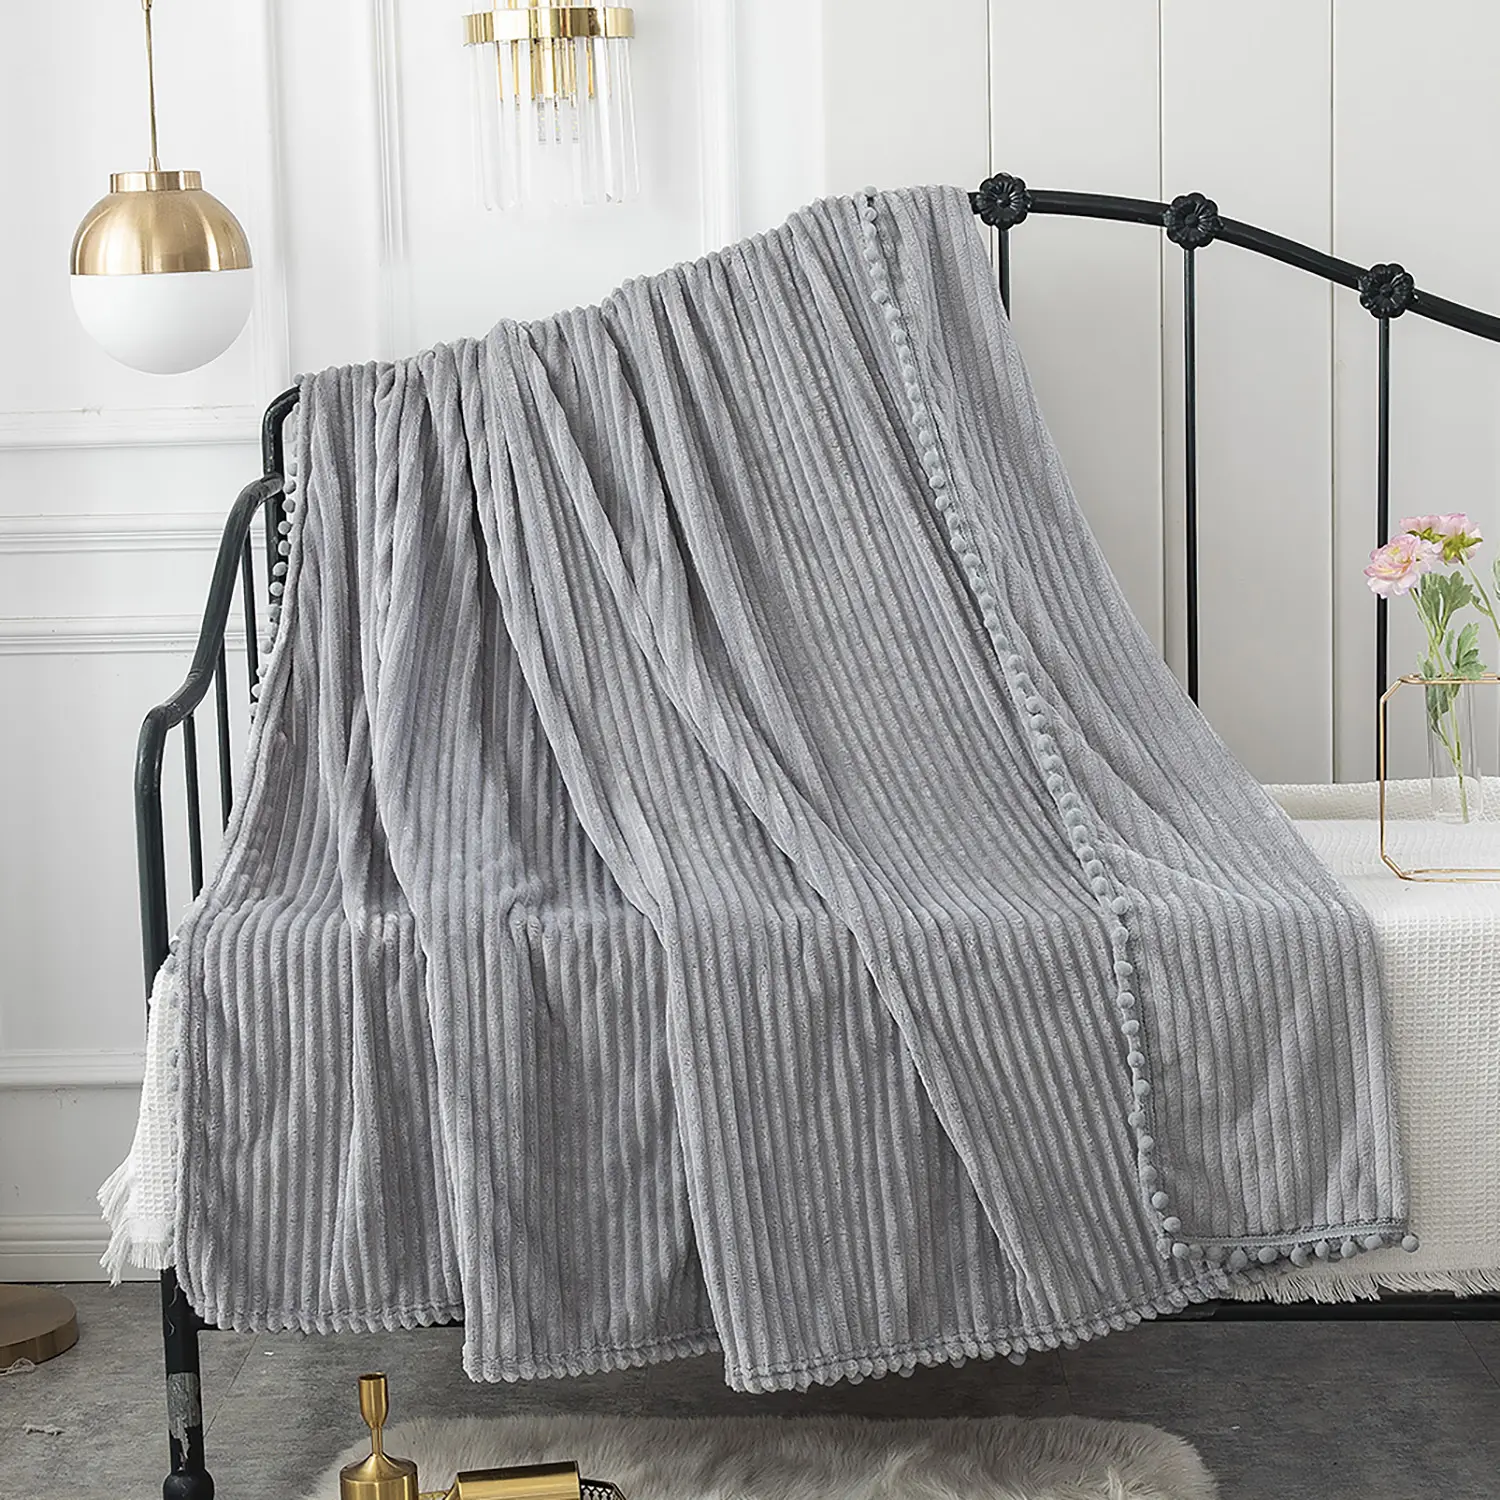 Best-selling New Thick Flannel Wool Blanket Tassel Ball Fleece Blanket